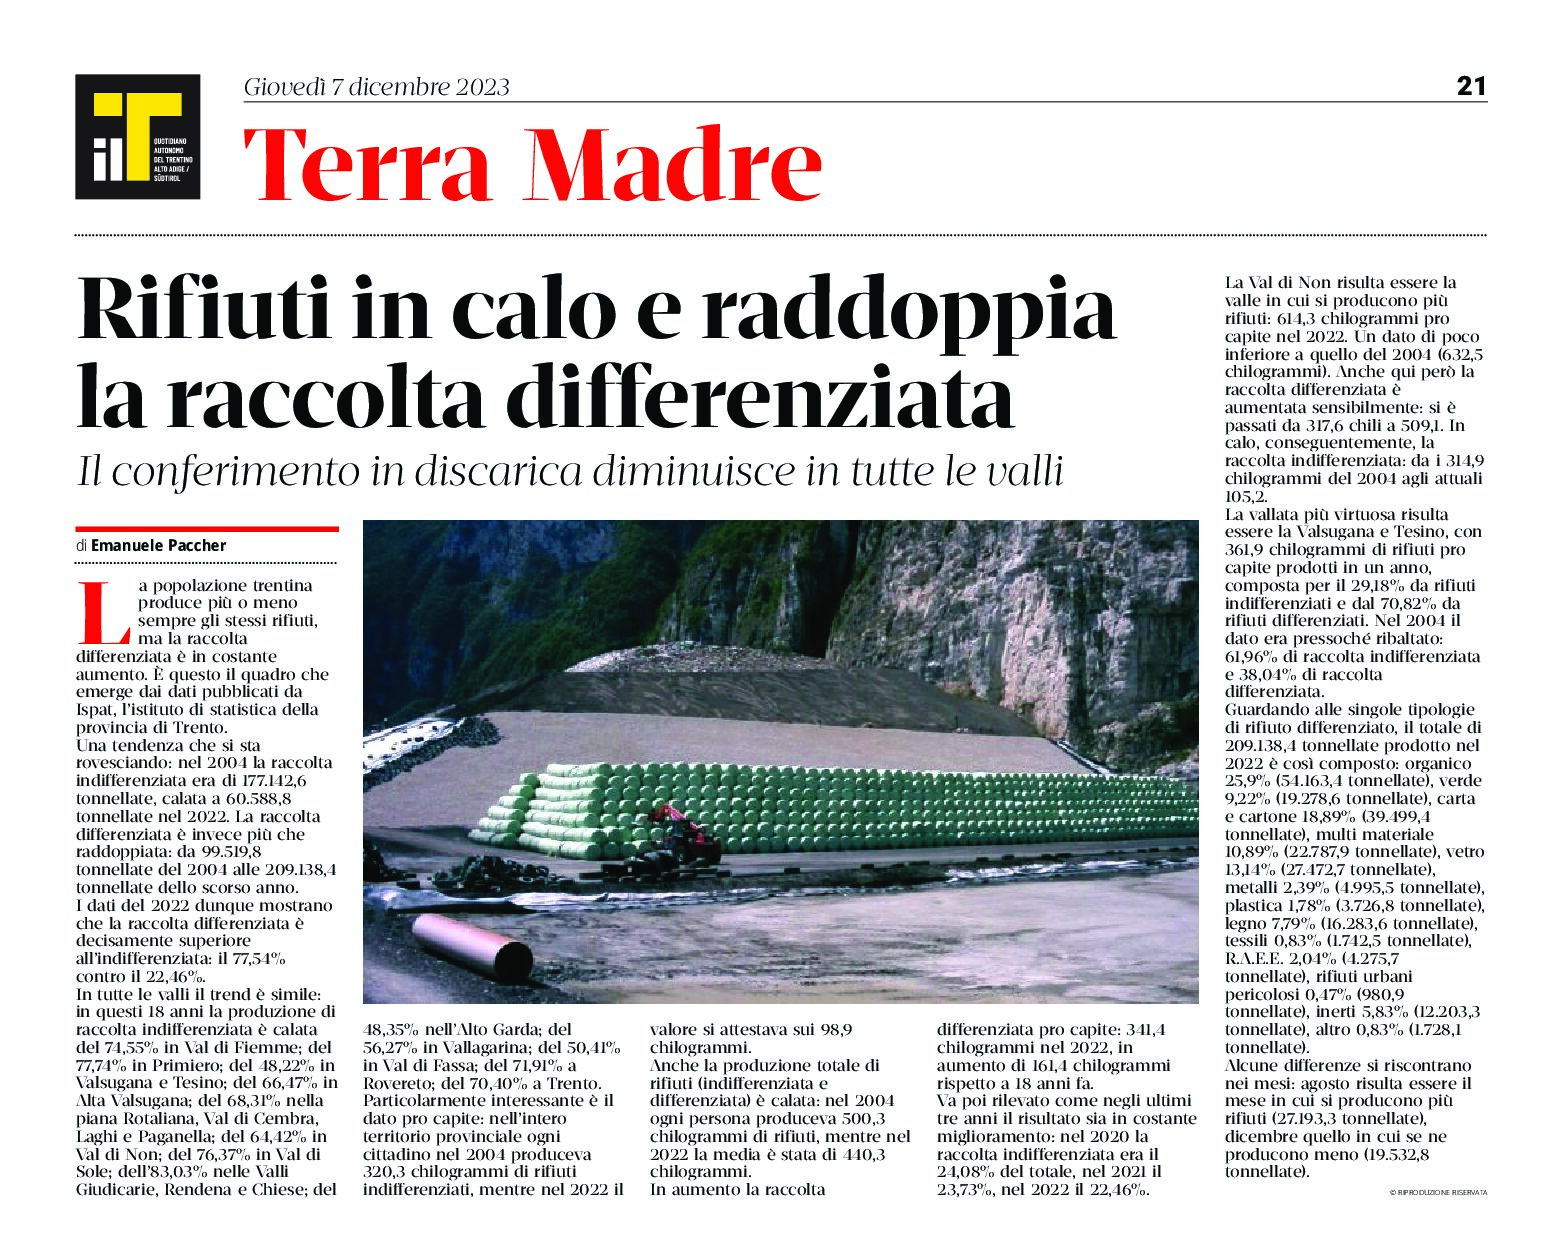 Trentino: rifiuti in calo e raddoppia la raccolta differenziata